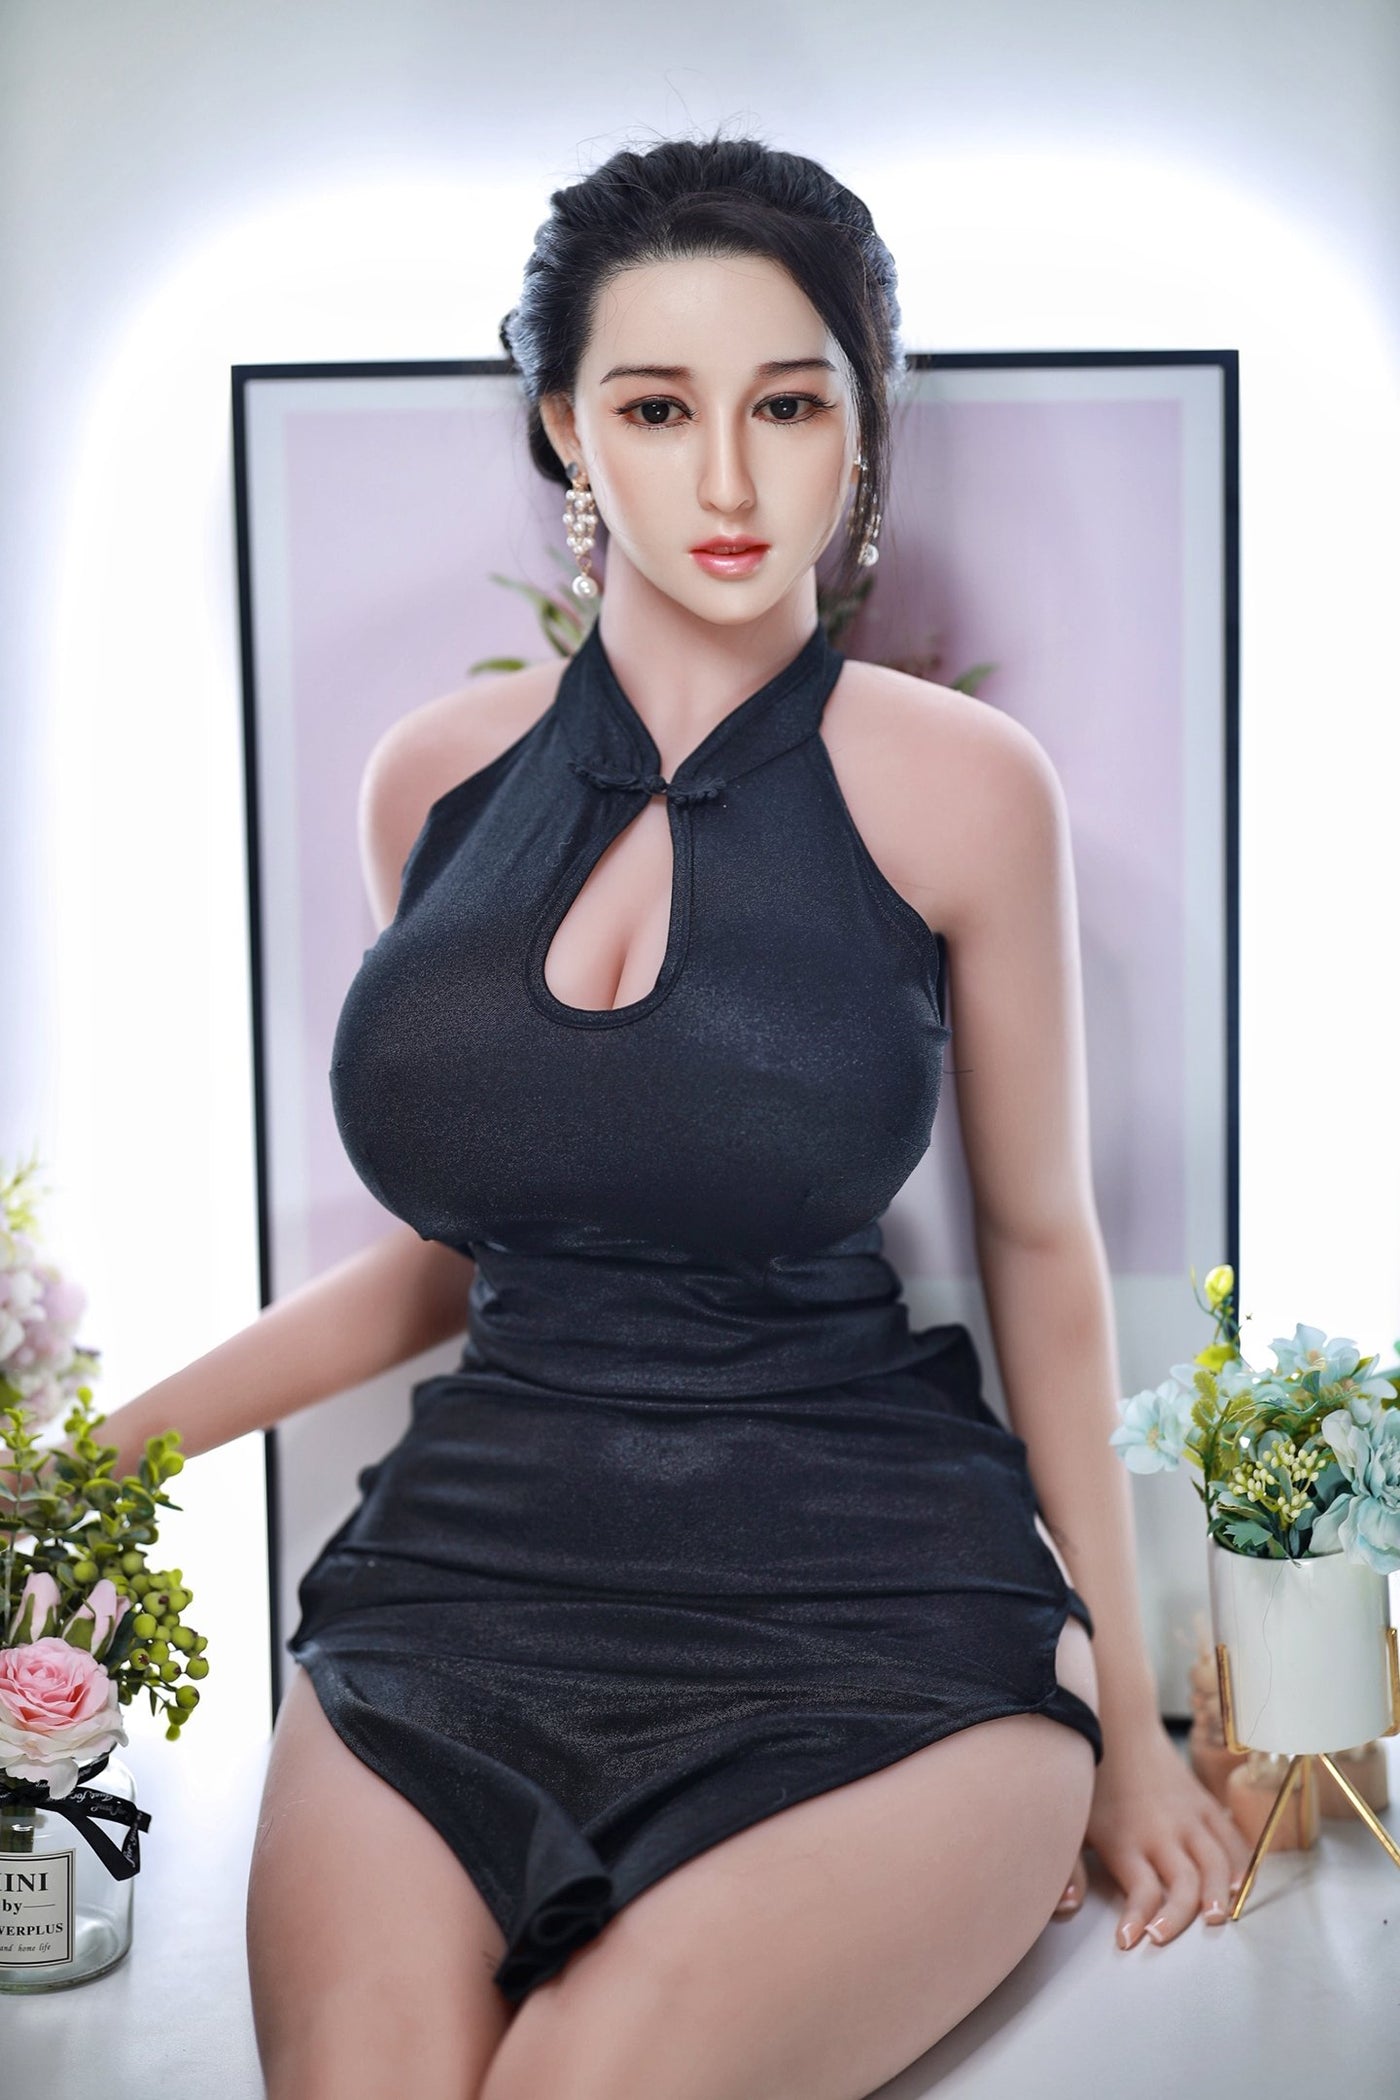 Neodoll Sugar babe - Chloe - Silicone TPE Hybrid Sex Doll - Gel Breast - Uterus - 170cm - Natural